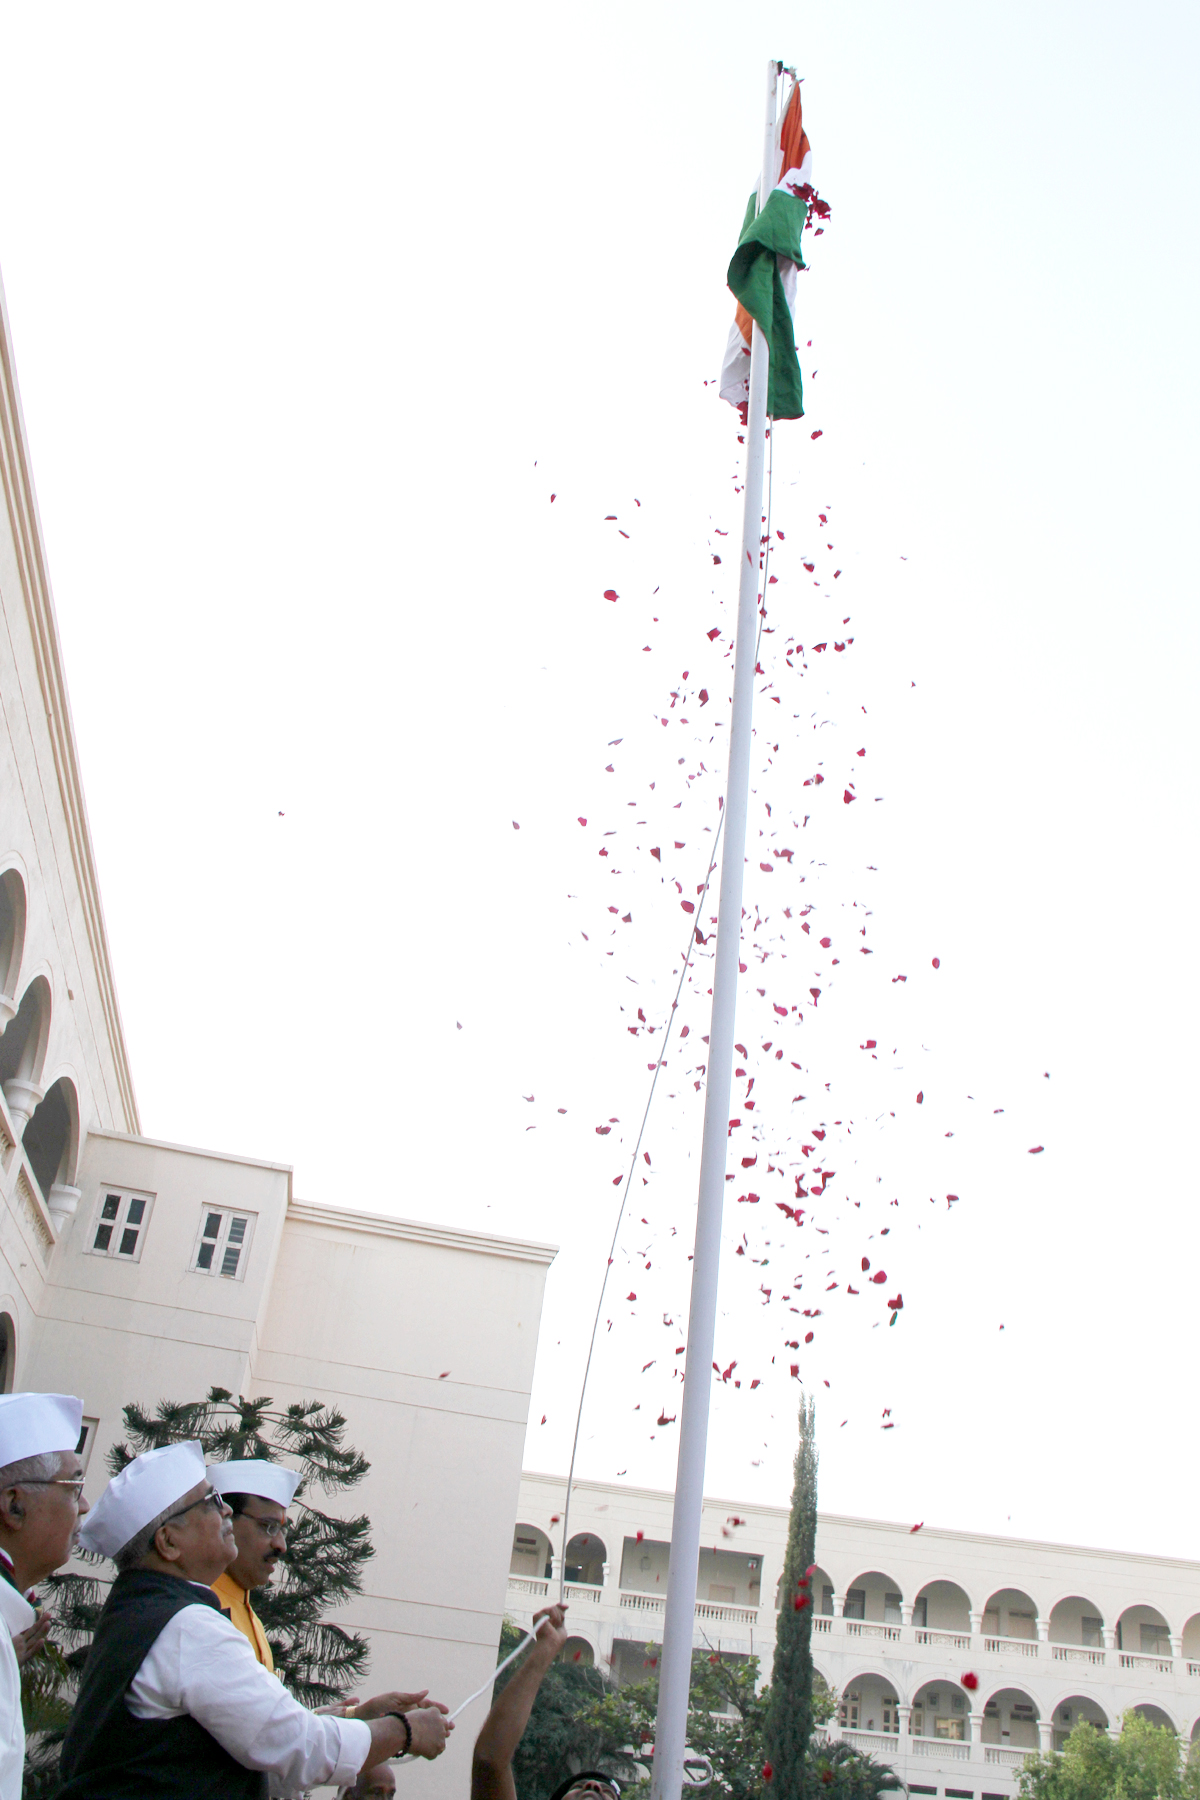 RSS Sarakaryavah Suresh Bhaiyyaji Joshi hoisted National Flag at Lathur January 26, 2016